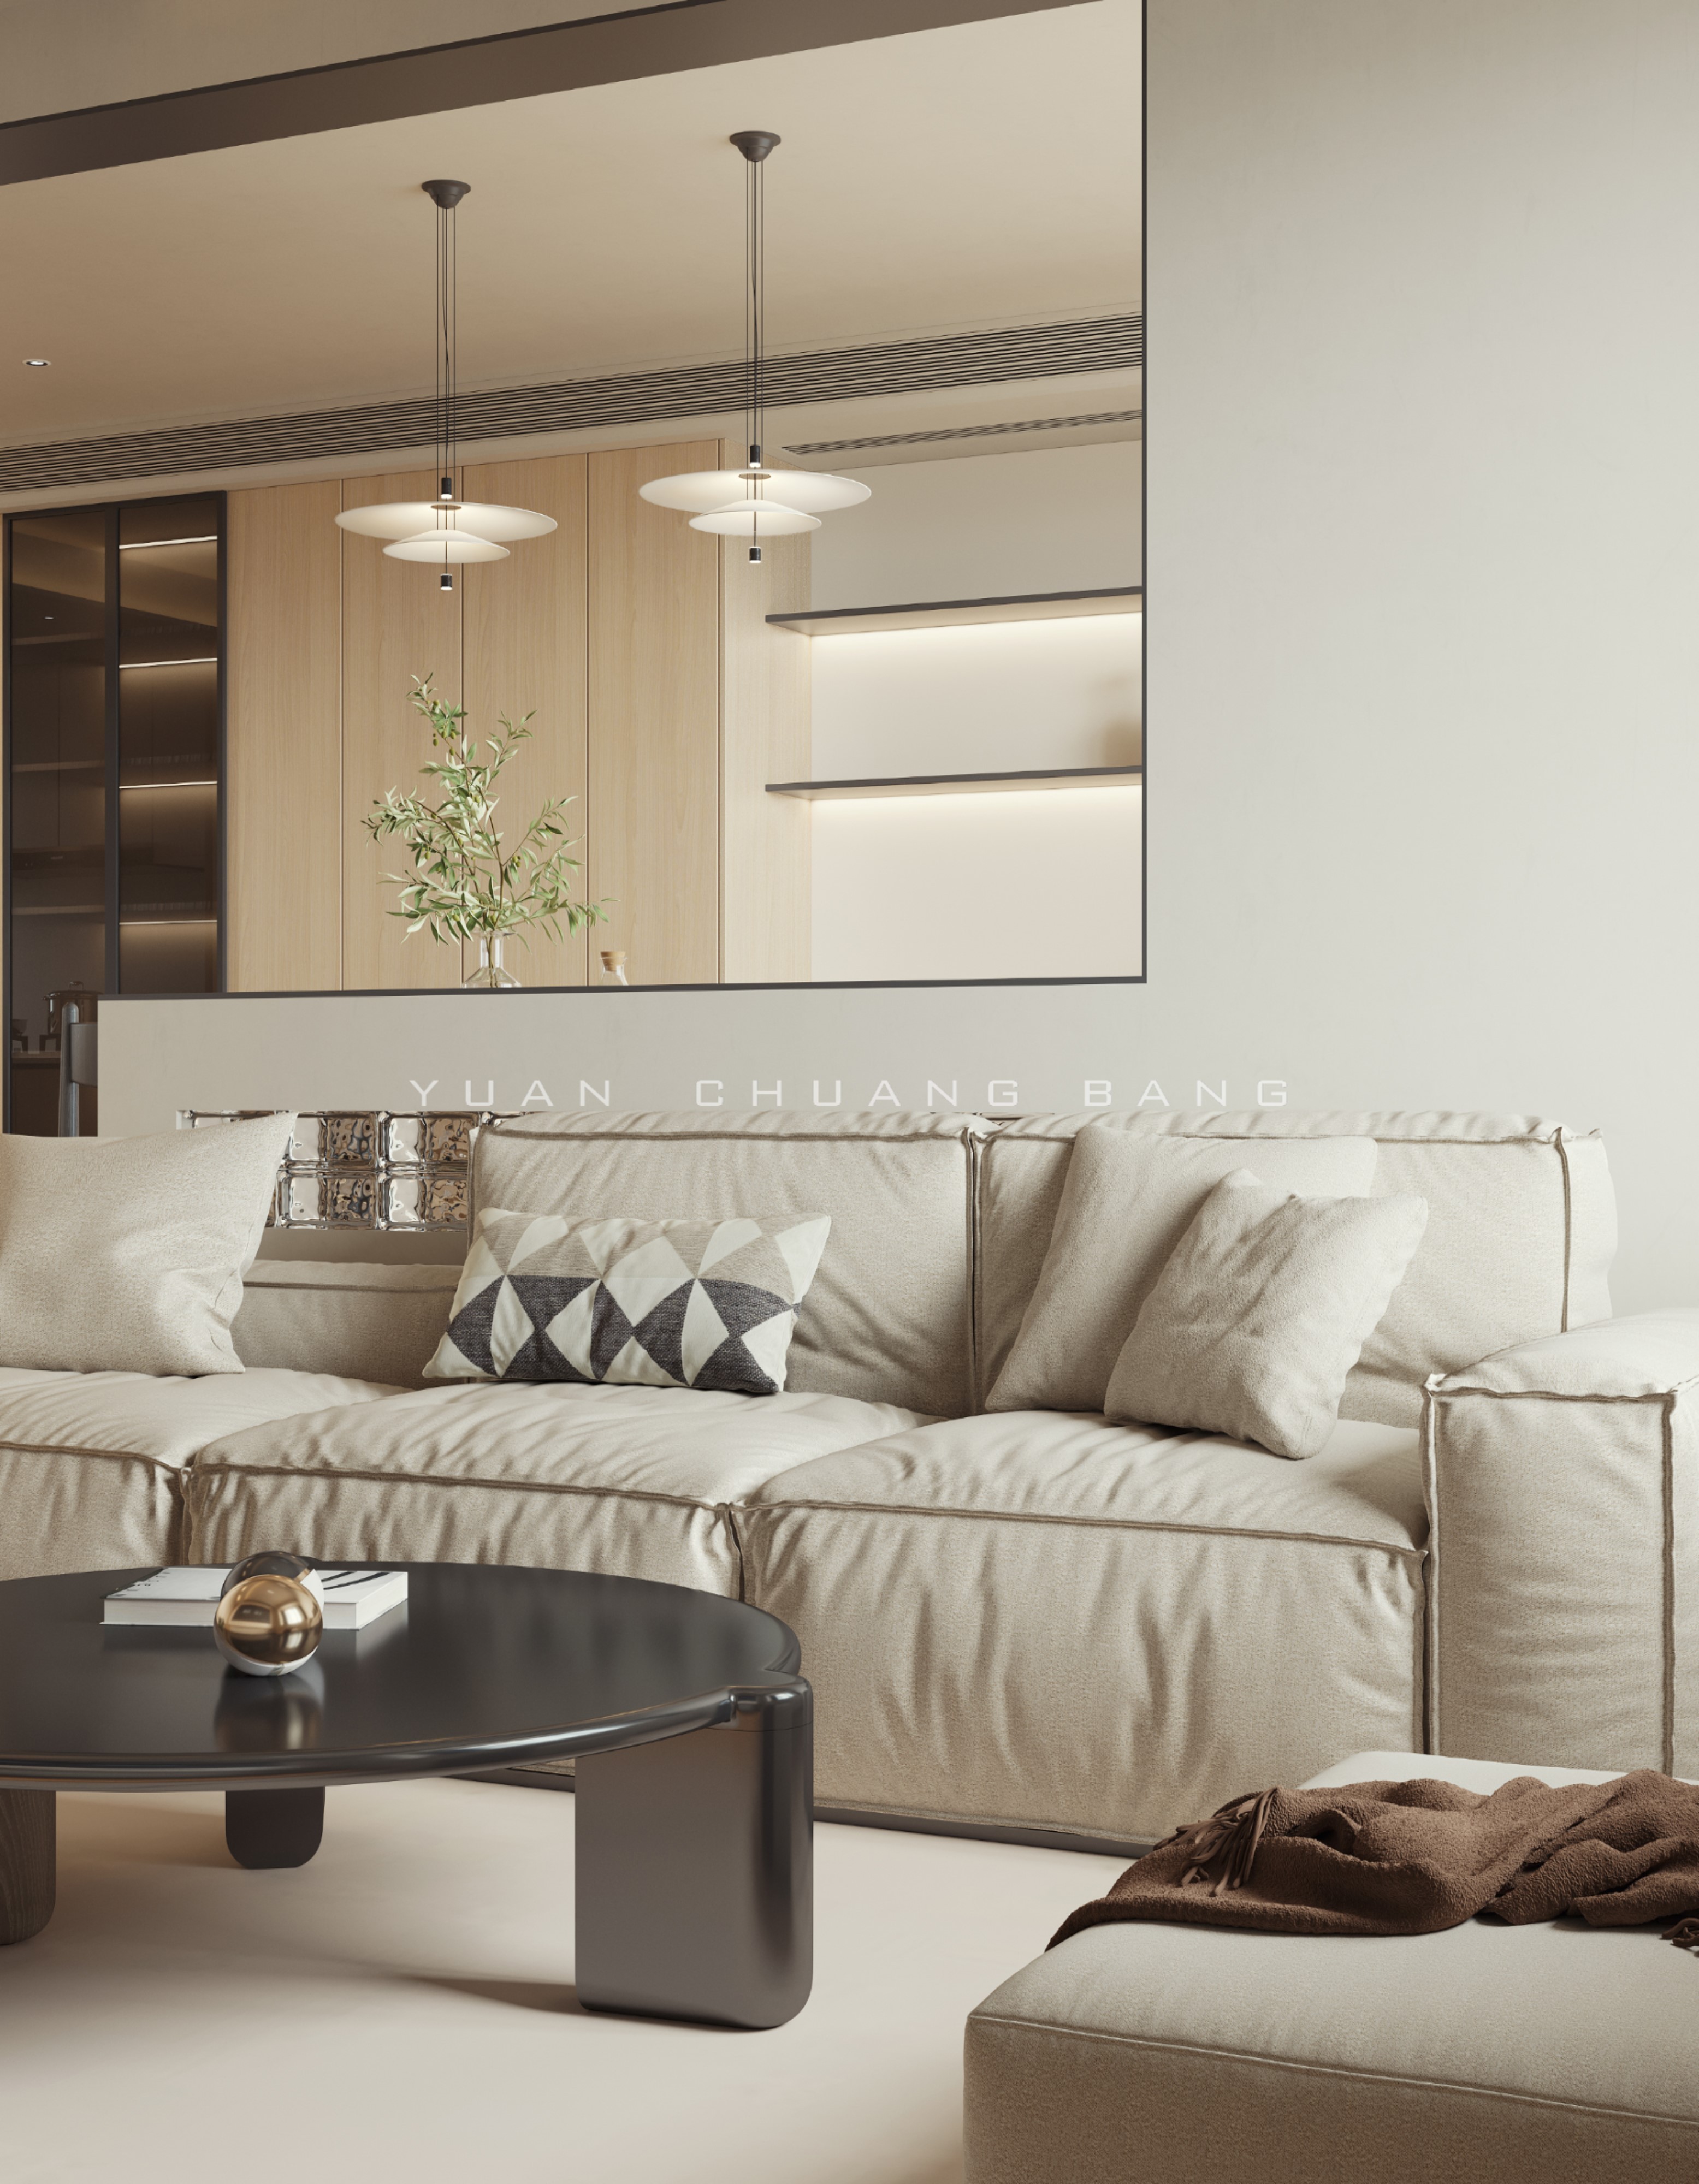 主卧室象牙白的墙板简洁大方，胡桃木的家具细腻稳重，灰蓝色的背景与_装修美图-新浪家居